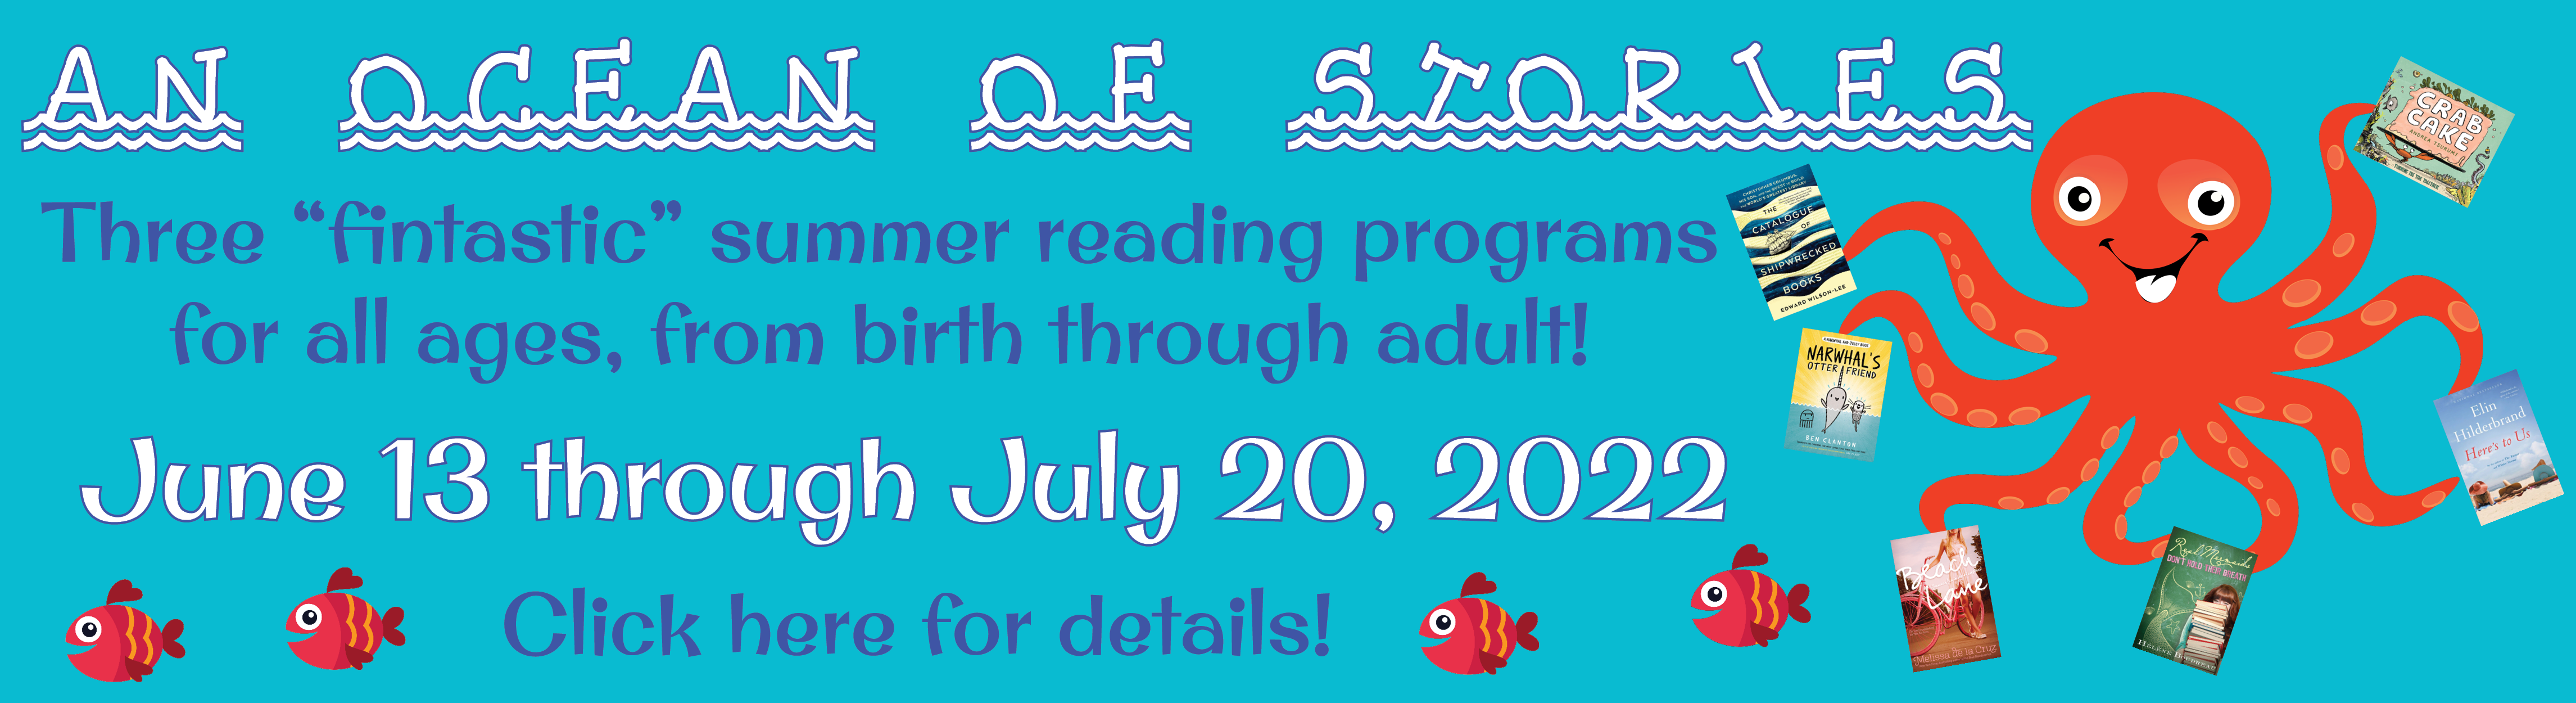 Summer Reading 2022: An Ocean of Stories